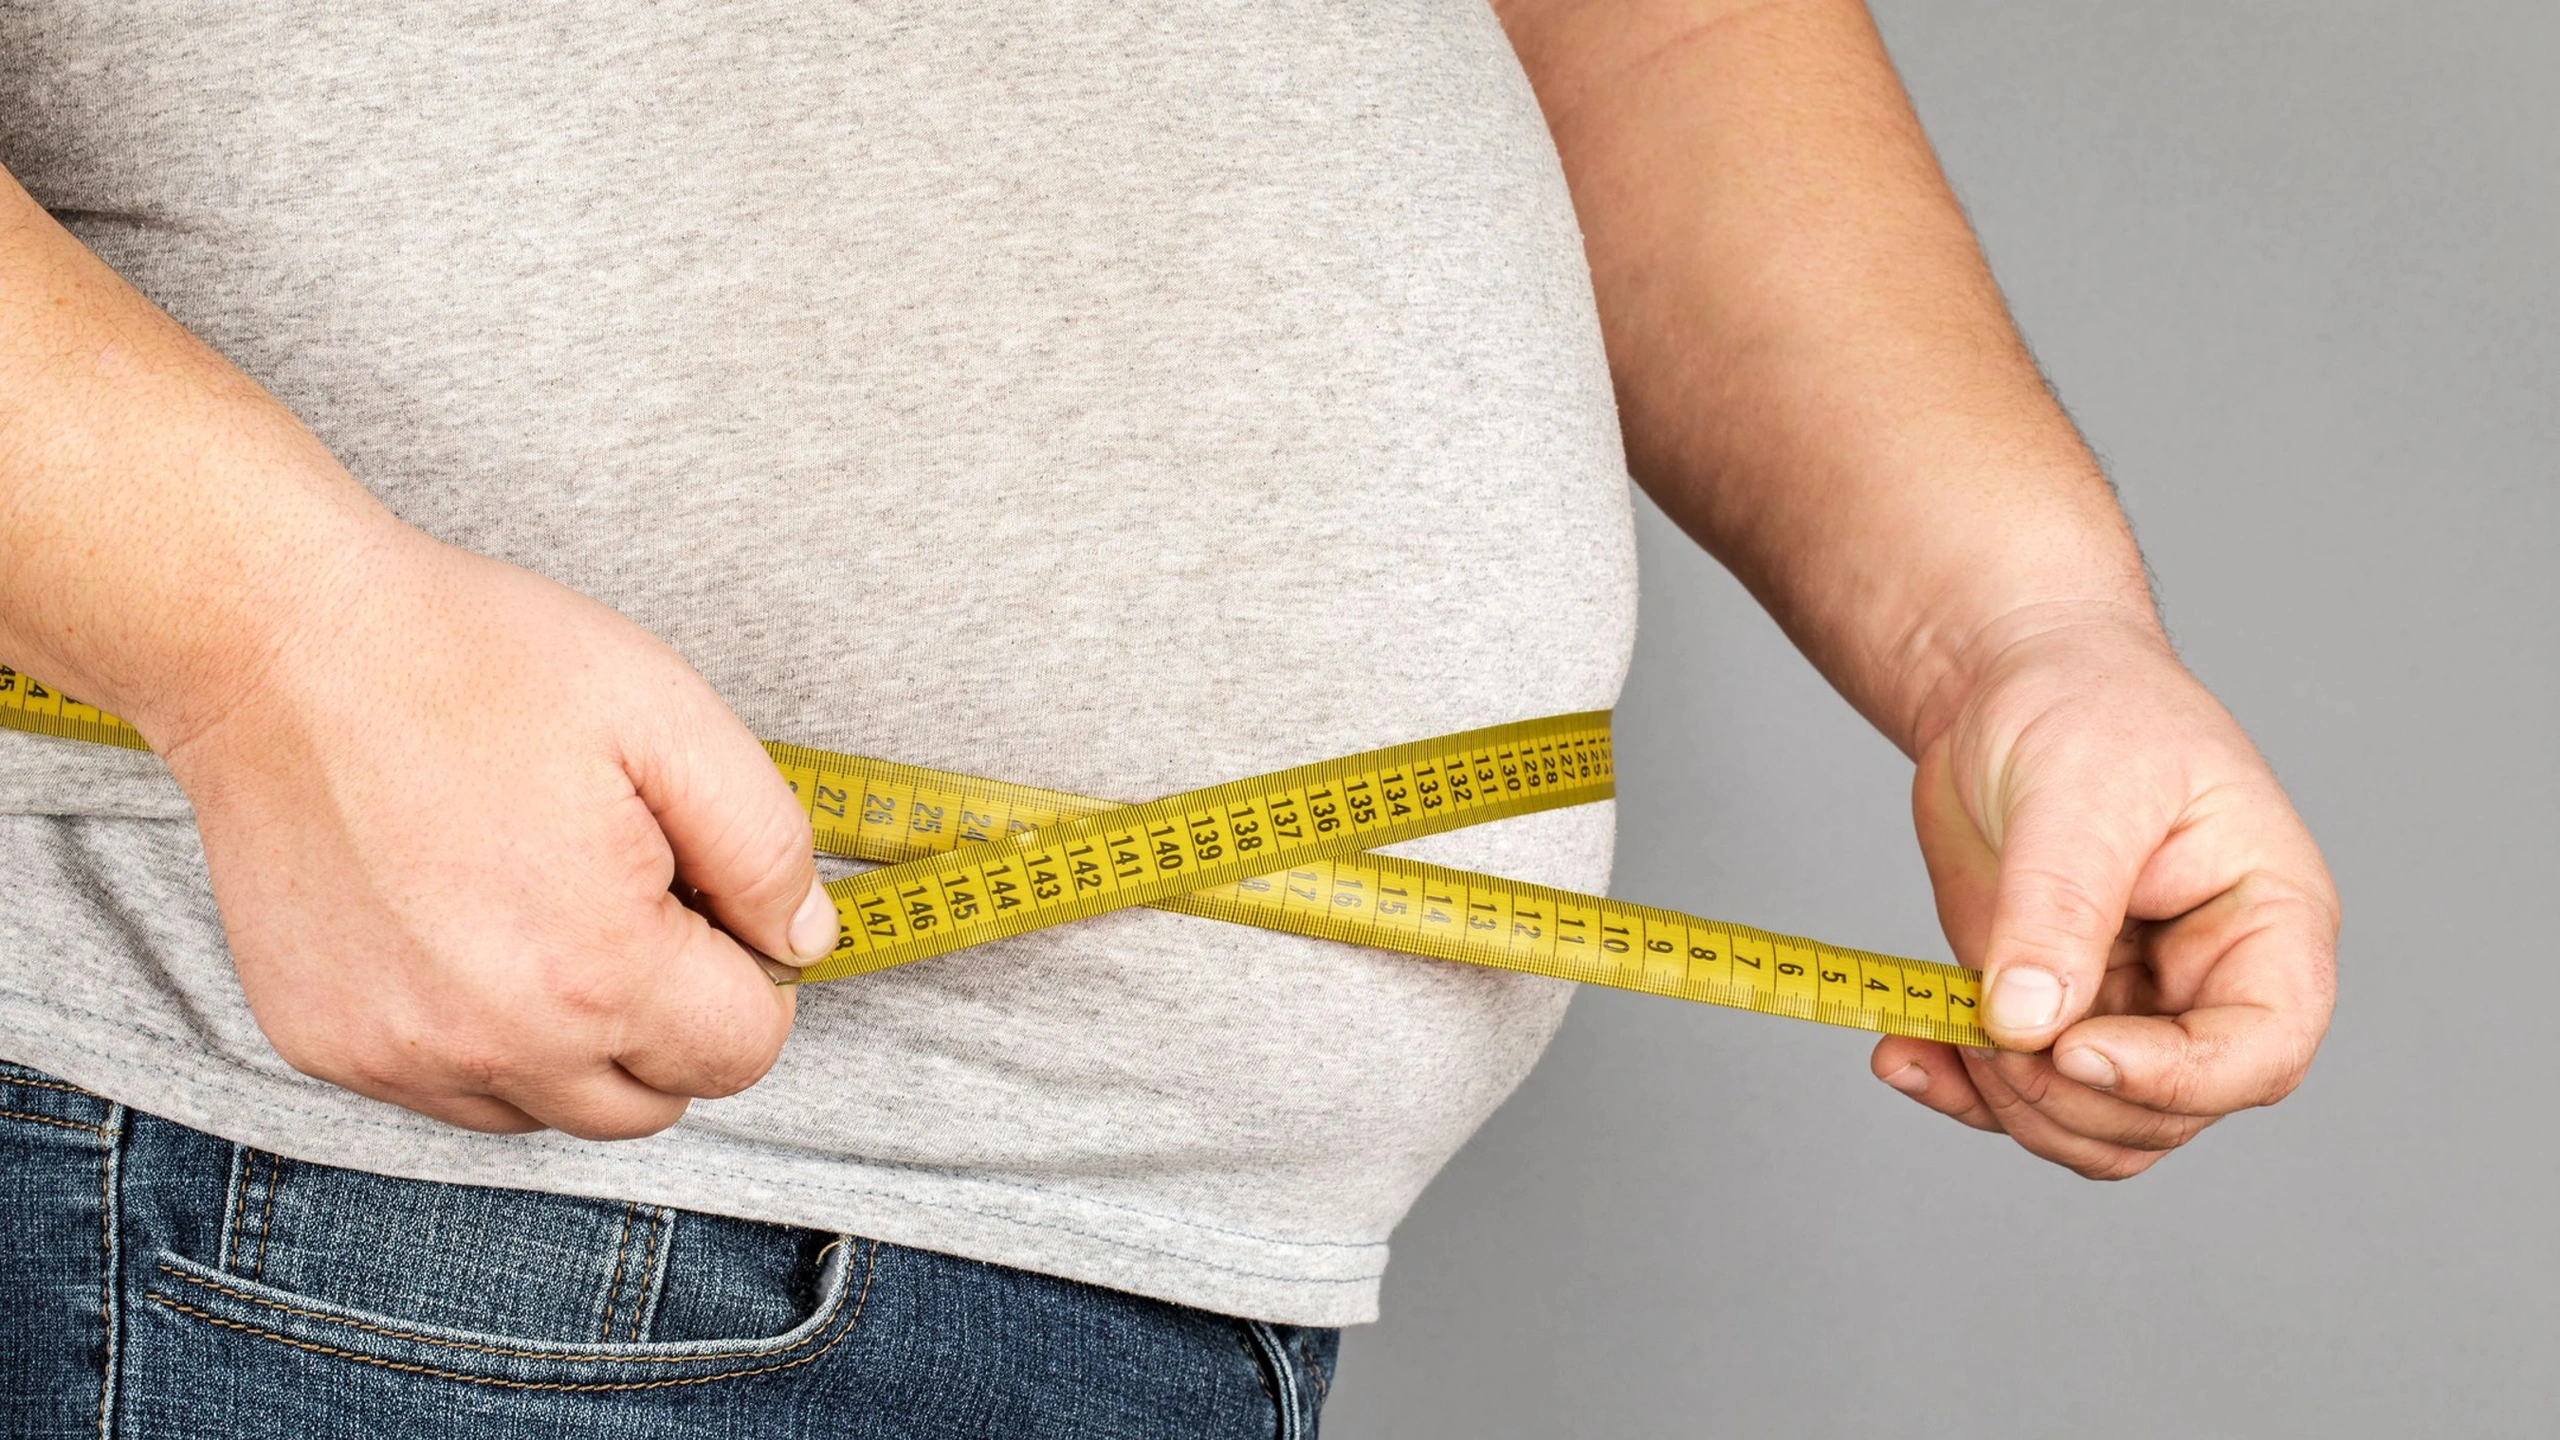 Академик Драпкина: лишний вес может стать предшественником серьёзных заболеваний